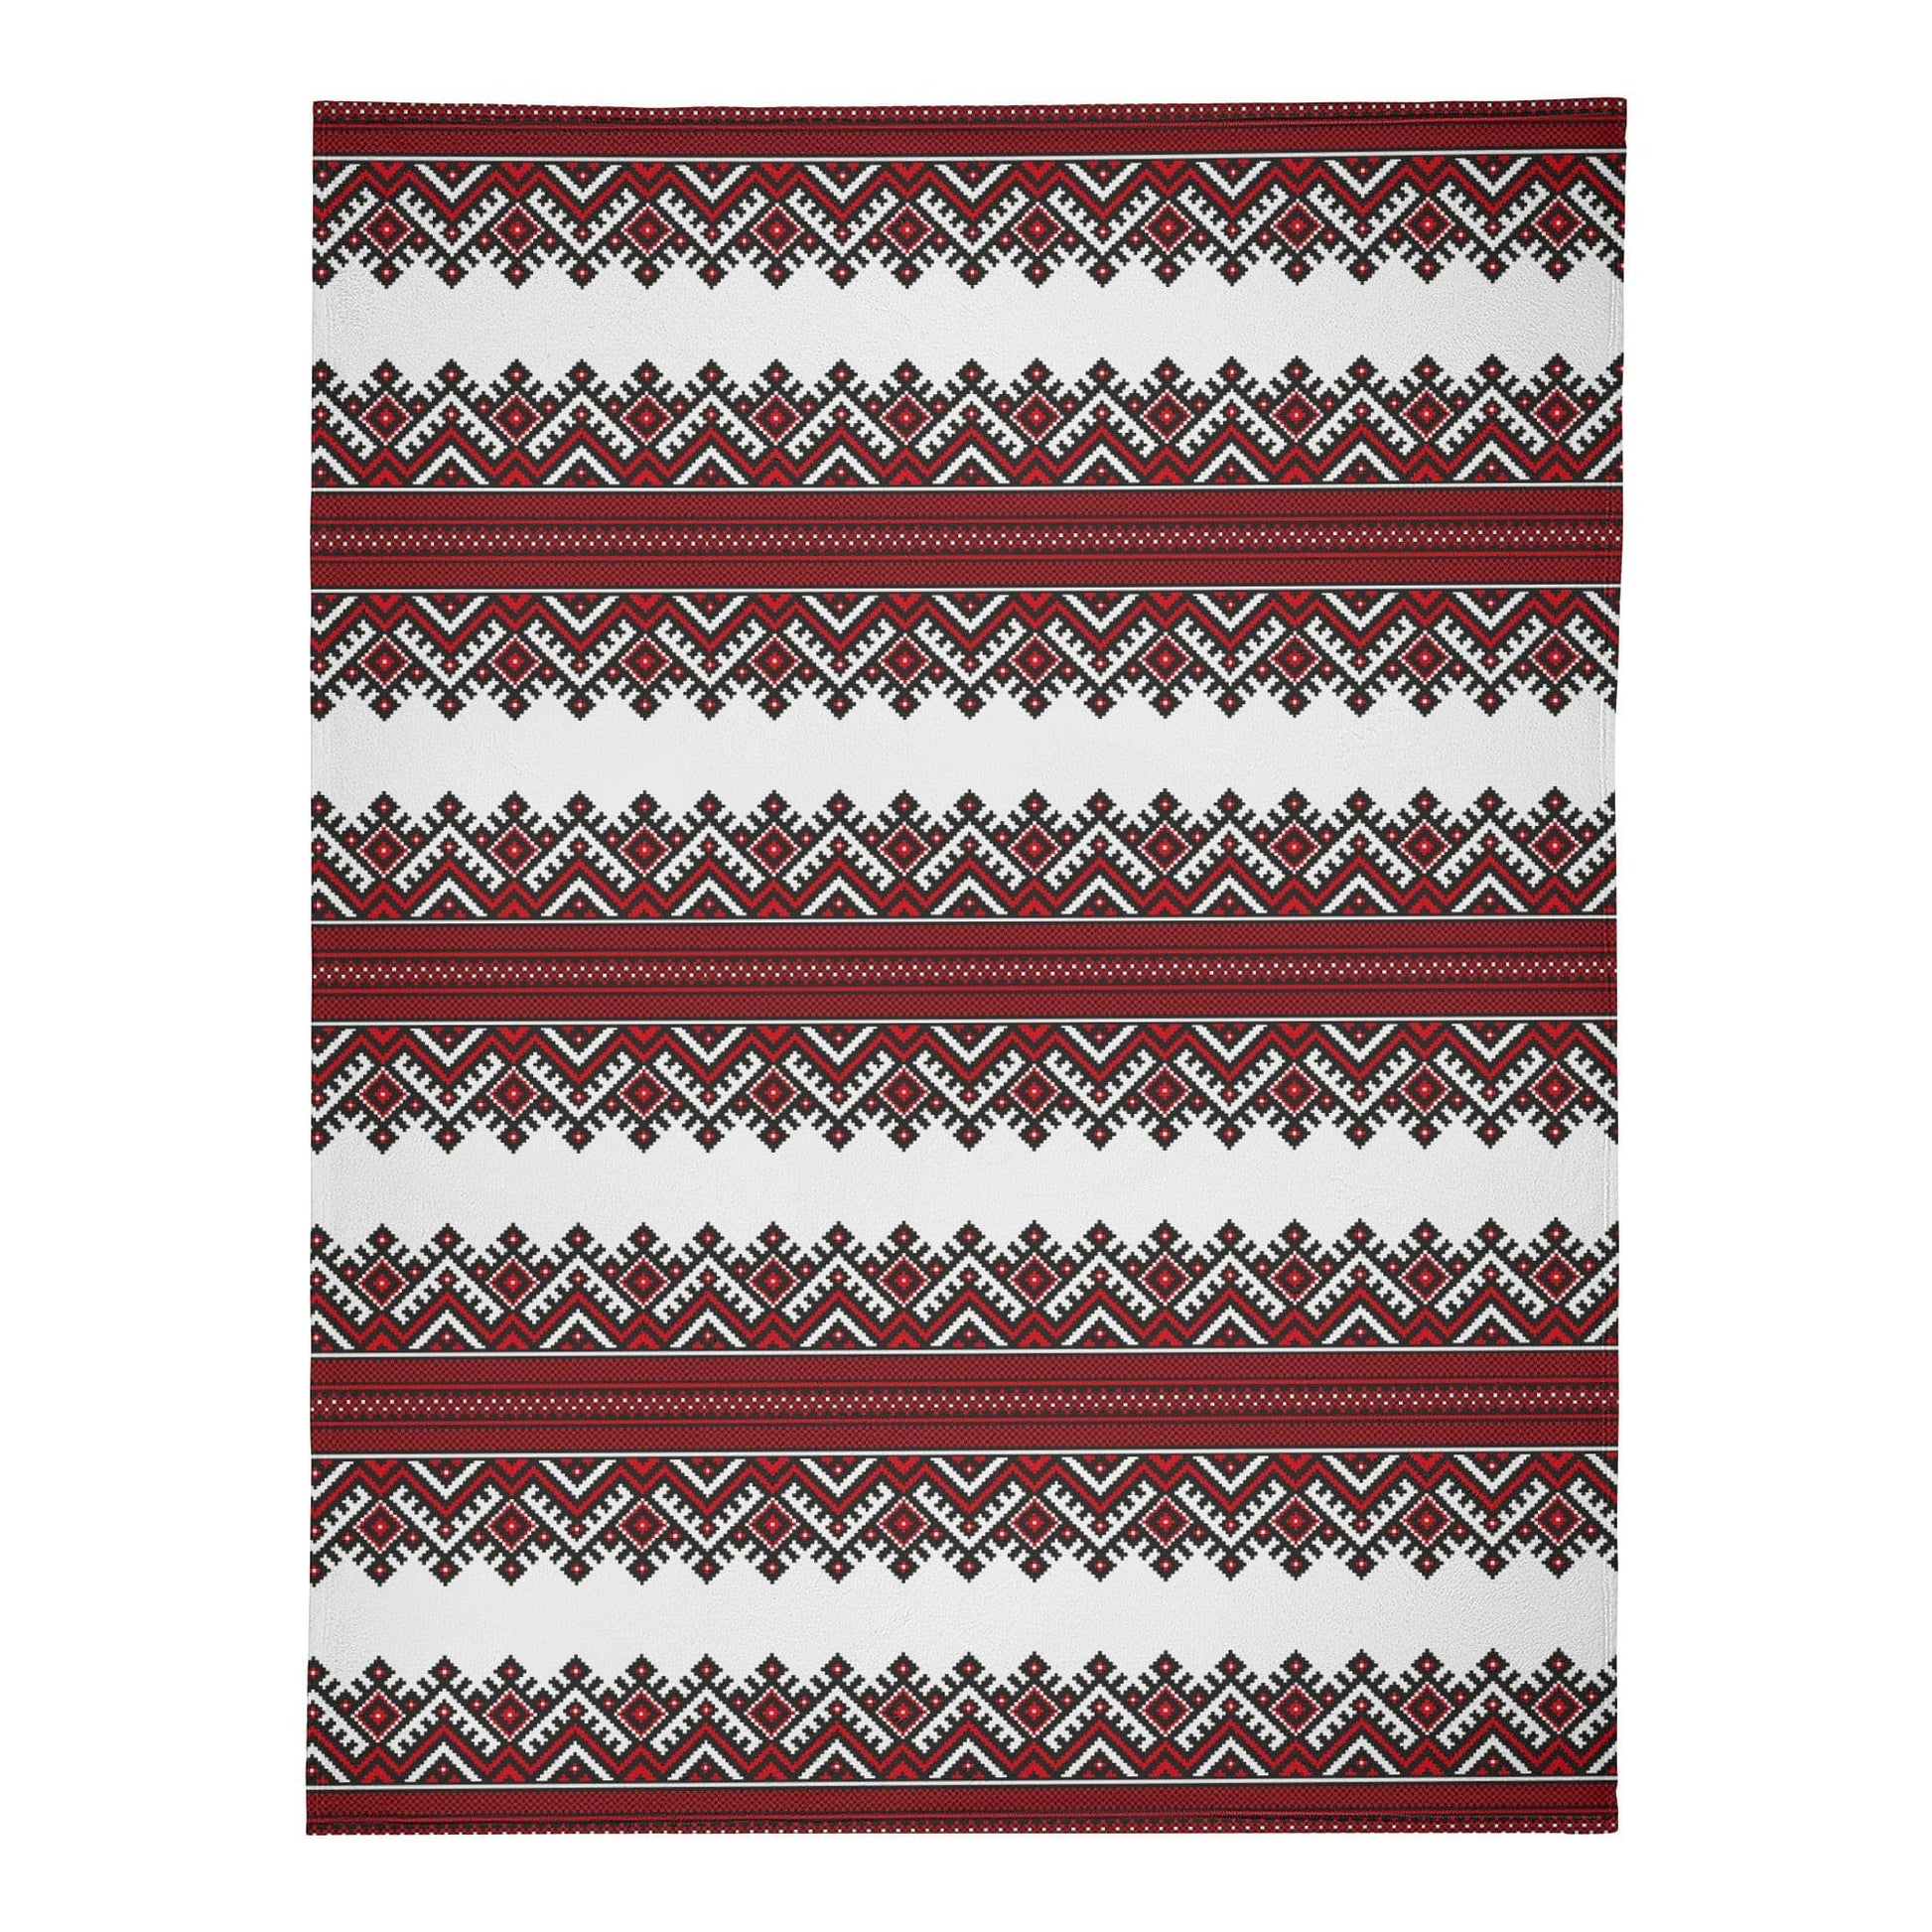 Red and White Ukrainian Folk Art Soft Polyester Premium Fleece Blanket  POP Customs   